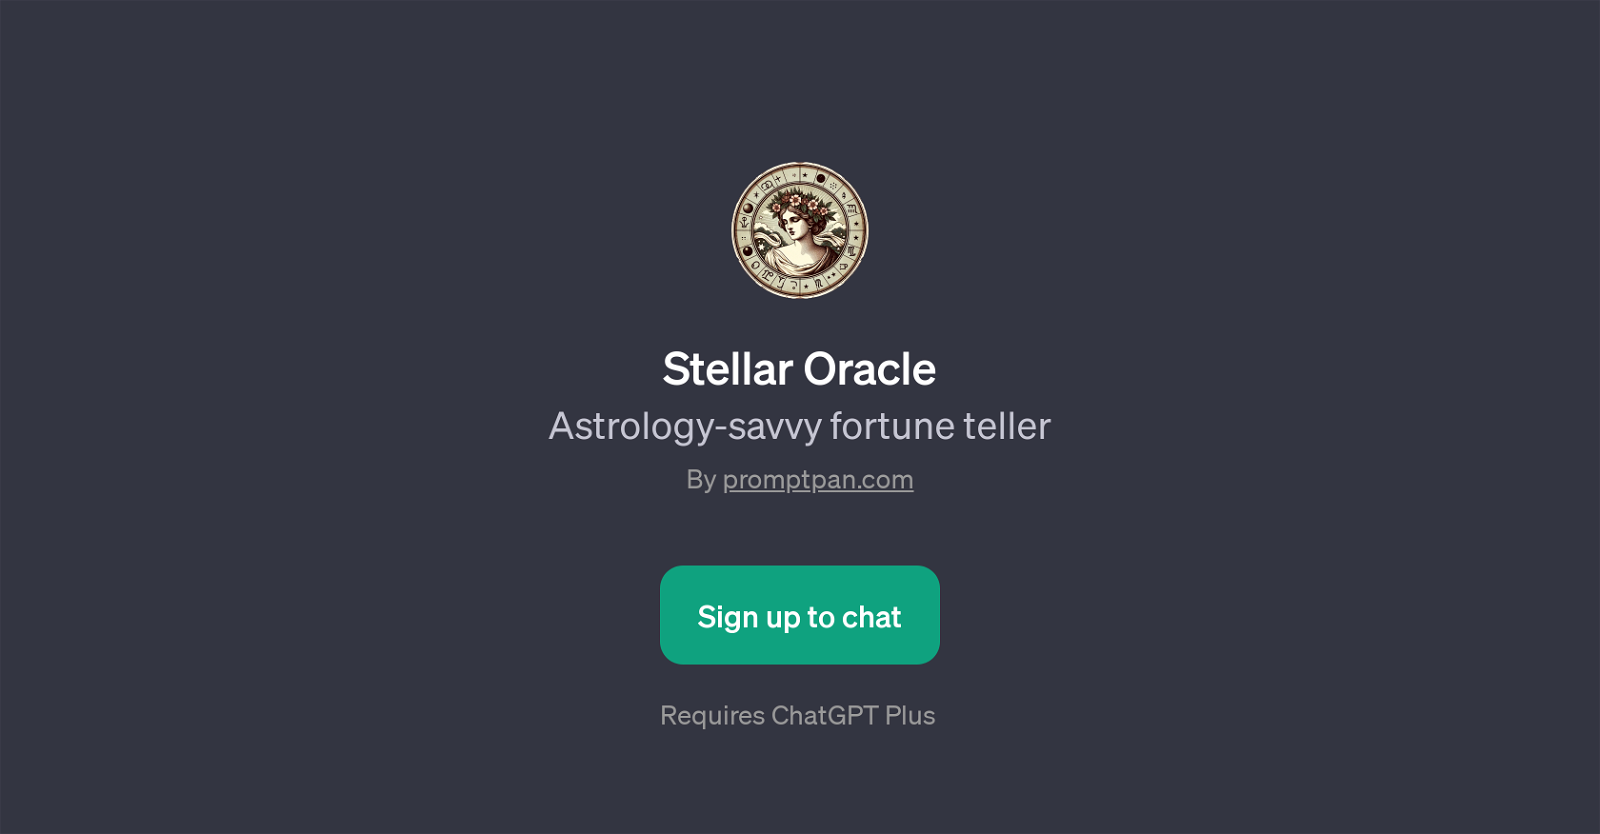 Stellar Oracle website